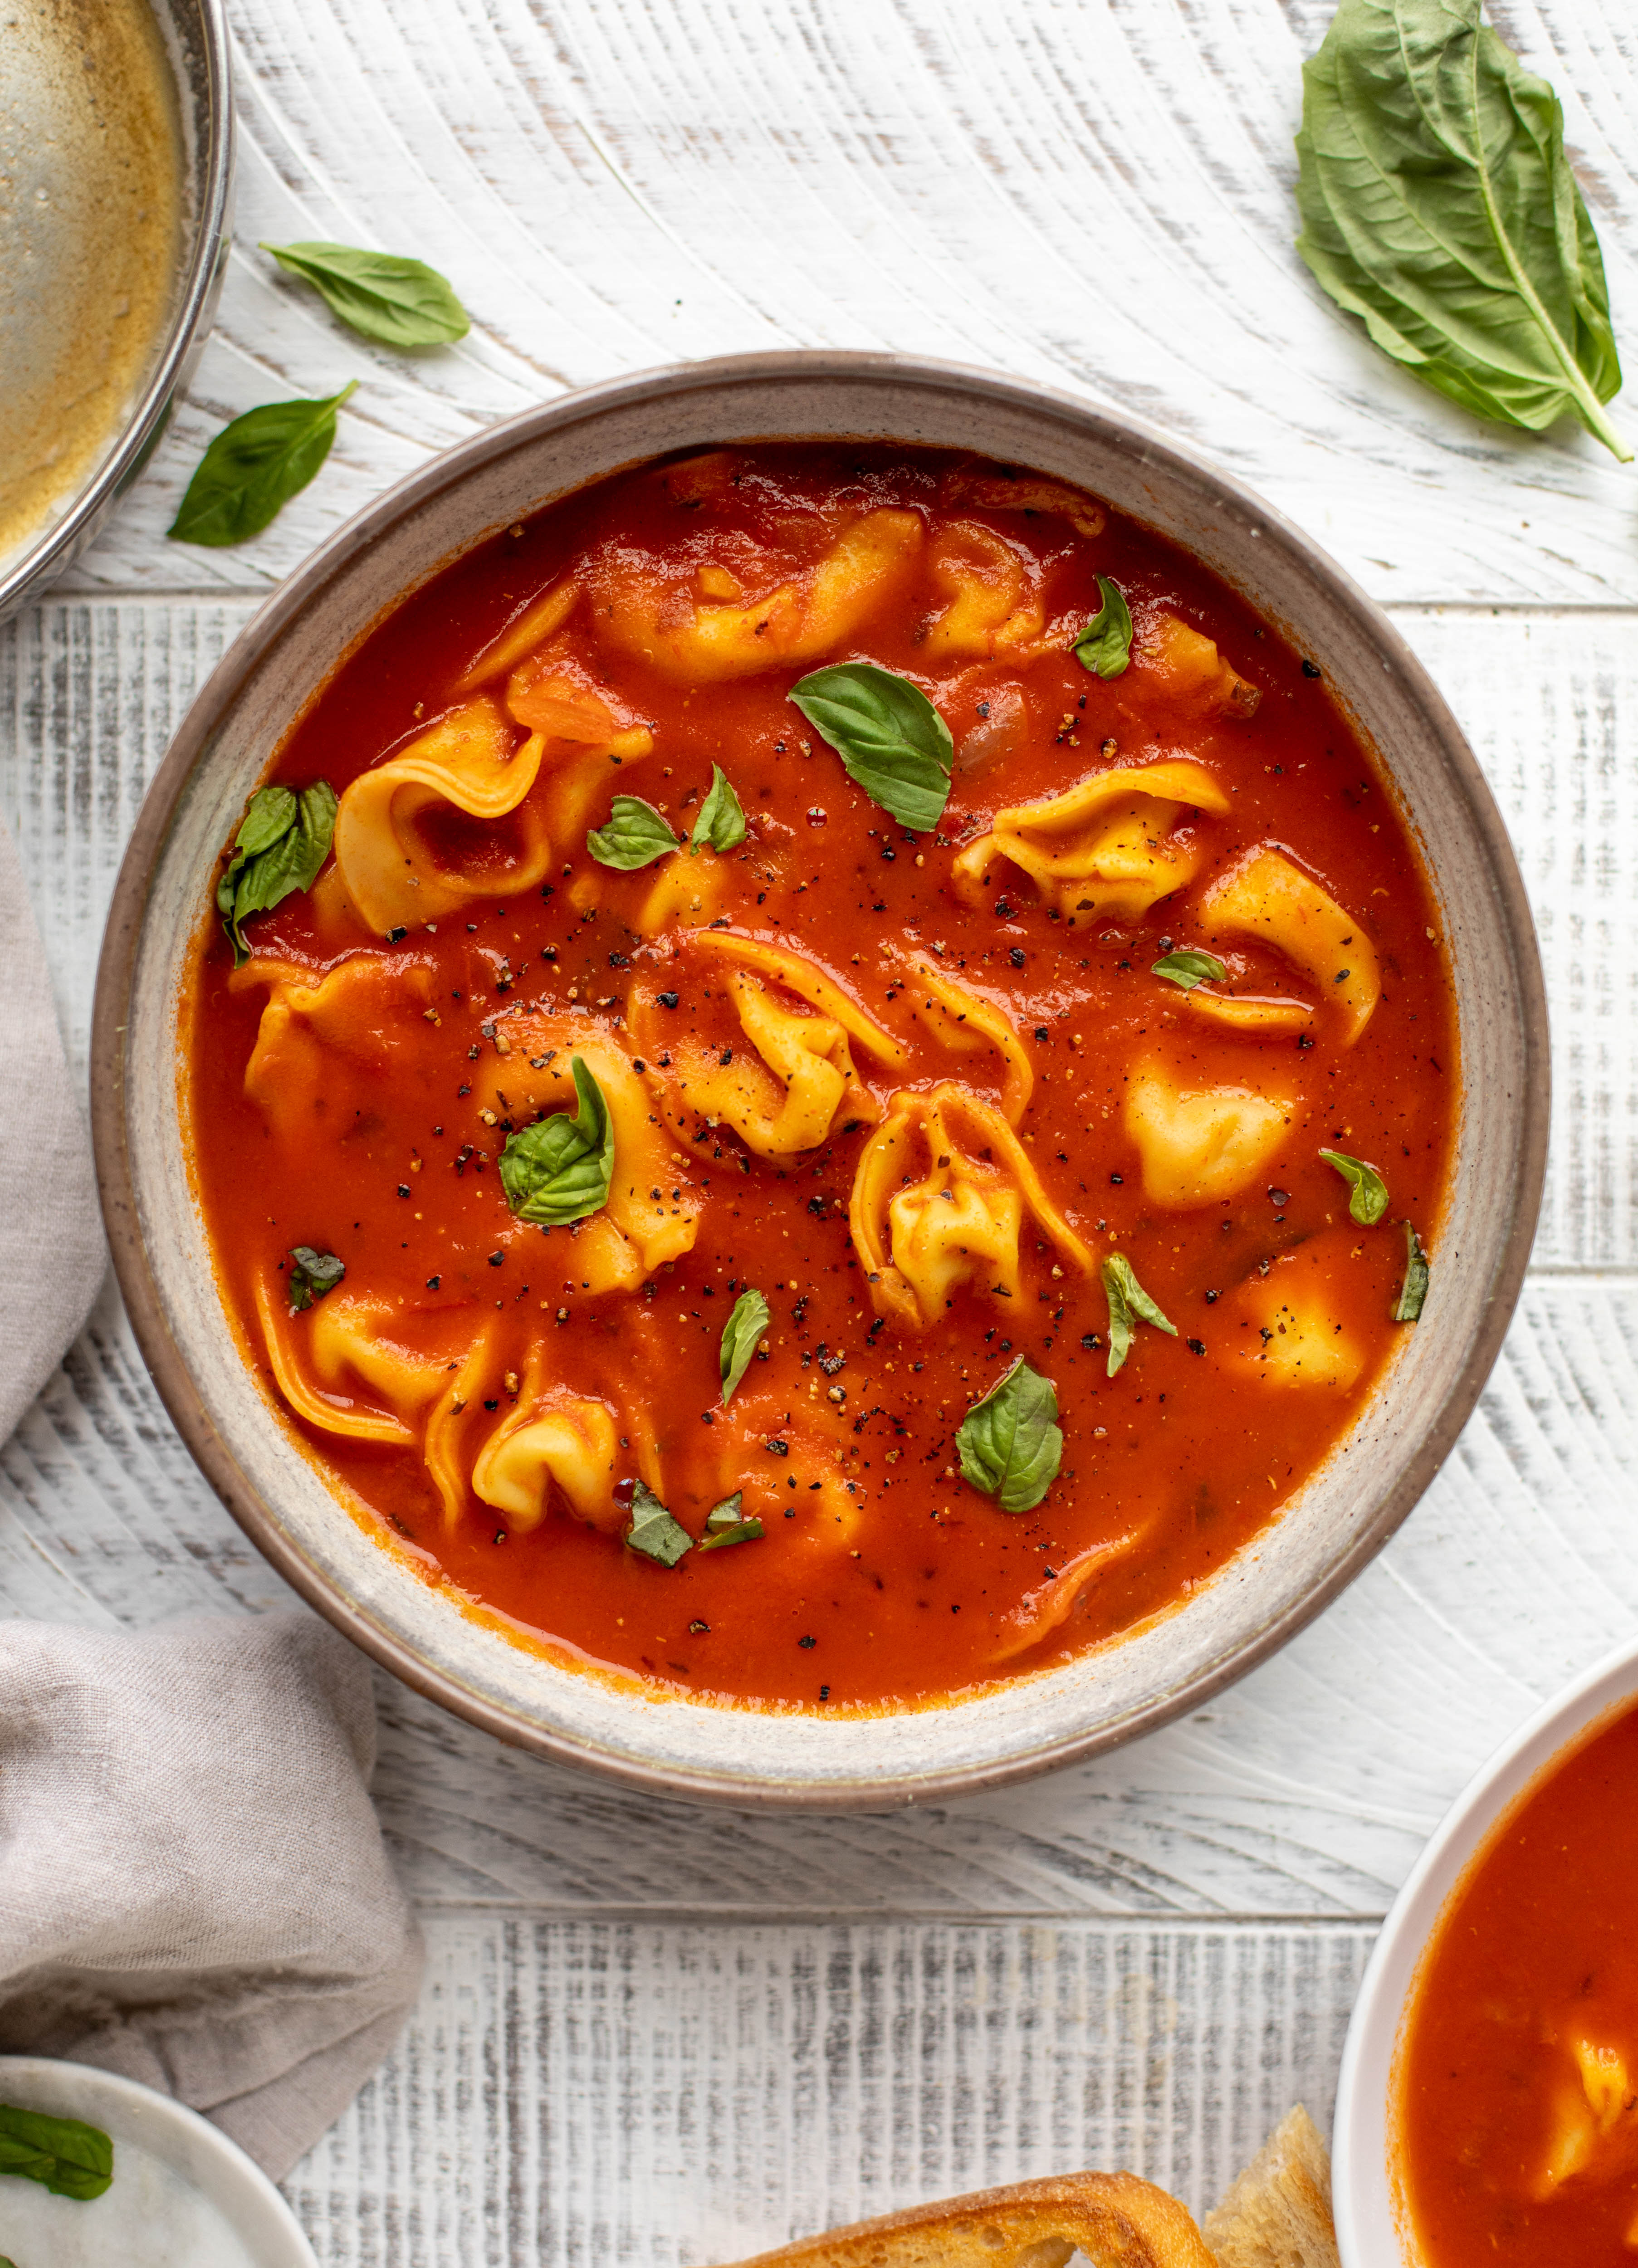 ¡Esta sopa de tortellini de tomate al curry tiene mucho sabor!  Sirva con tortellini con queso y tostadas de ajo con mantequilla marrón para la comida perfecta entre semana.